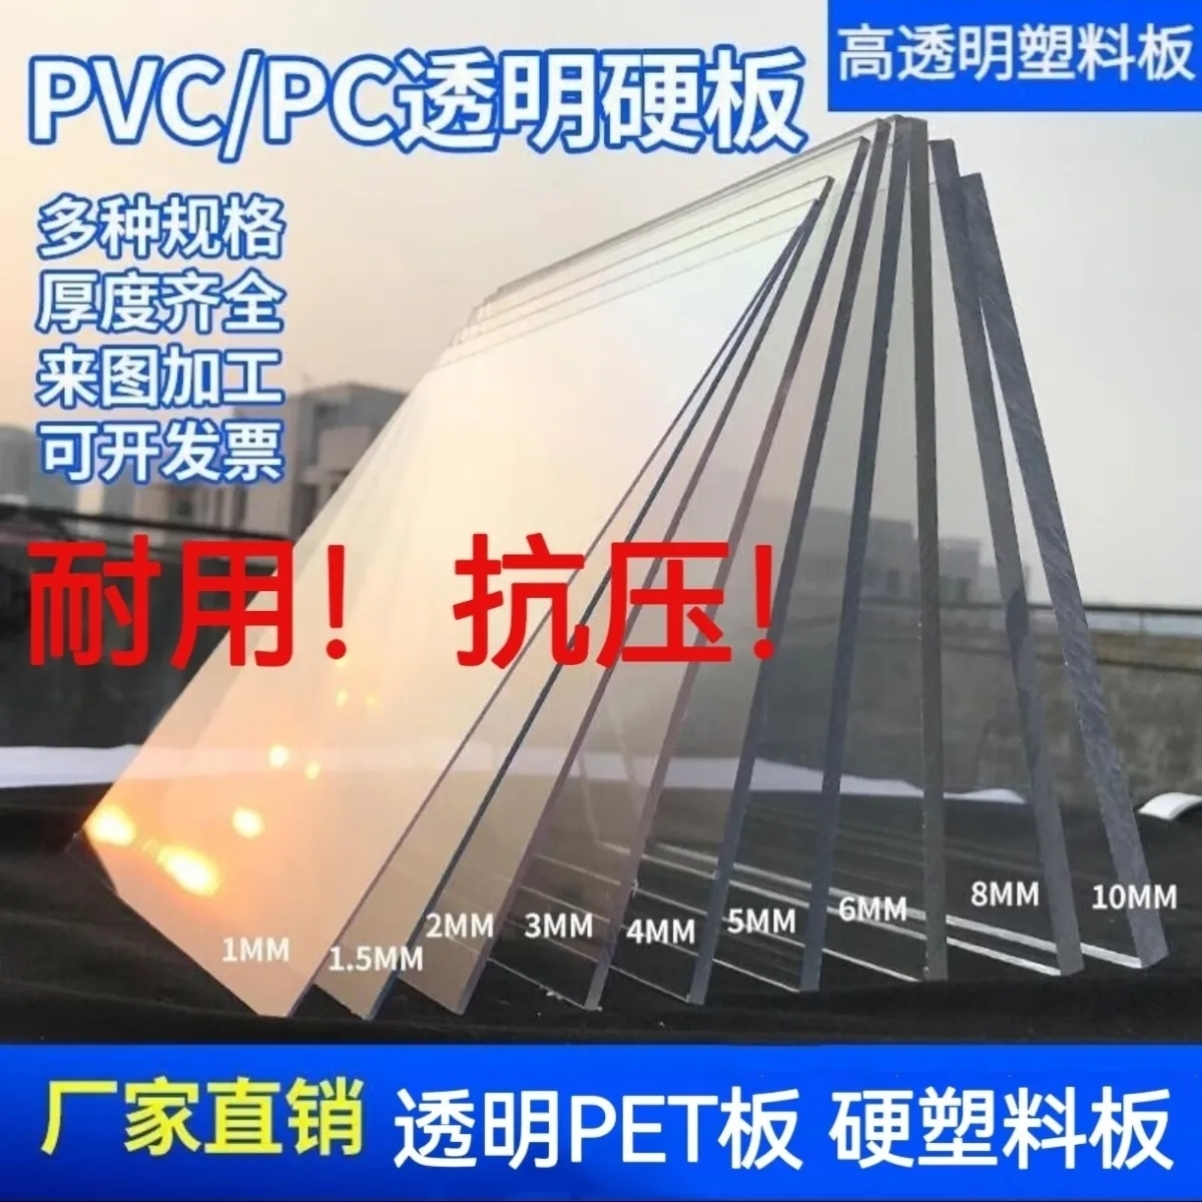 透明PVC硬板 PC耐力板 有机玻璃板 防雨塑料板耐腐蚀亚克力板加工